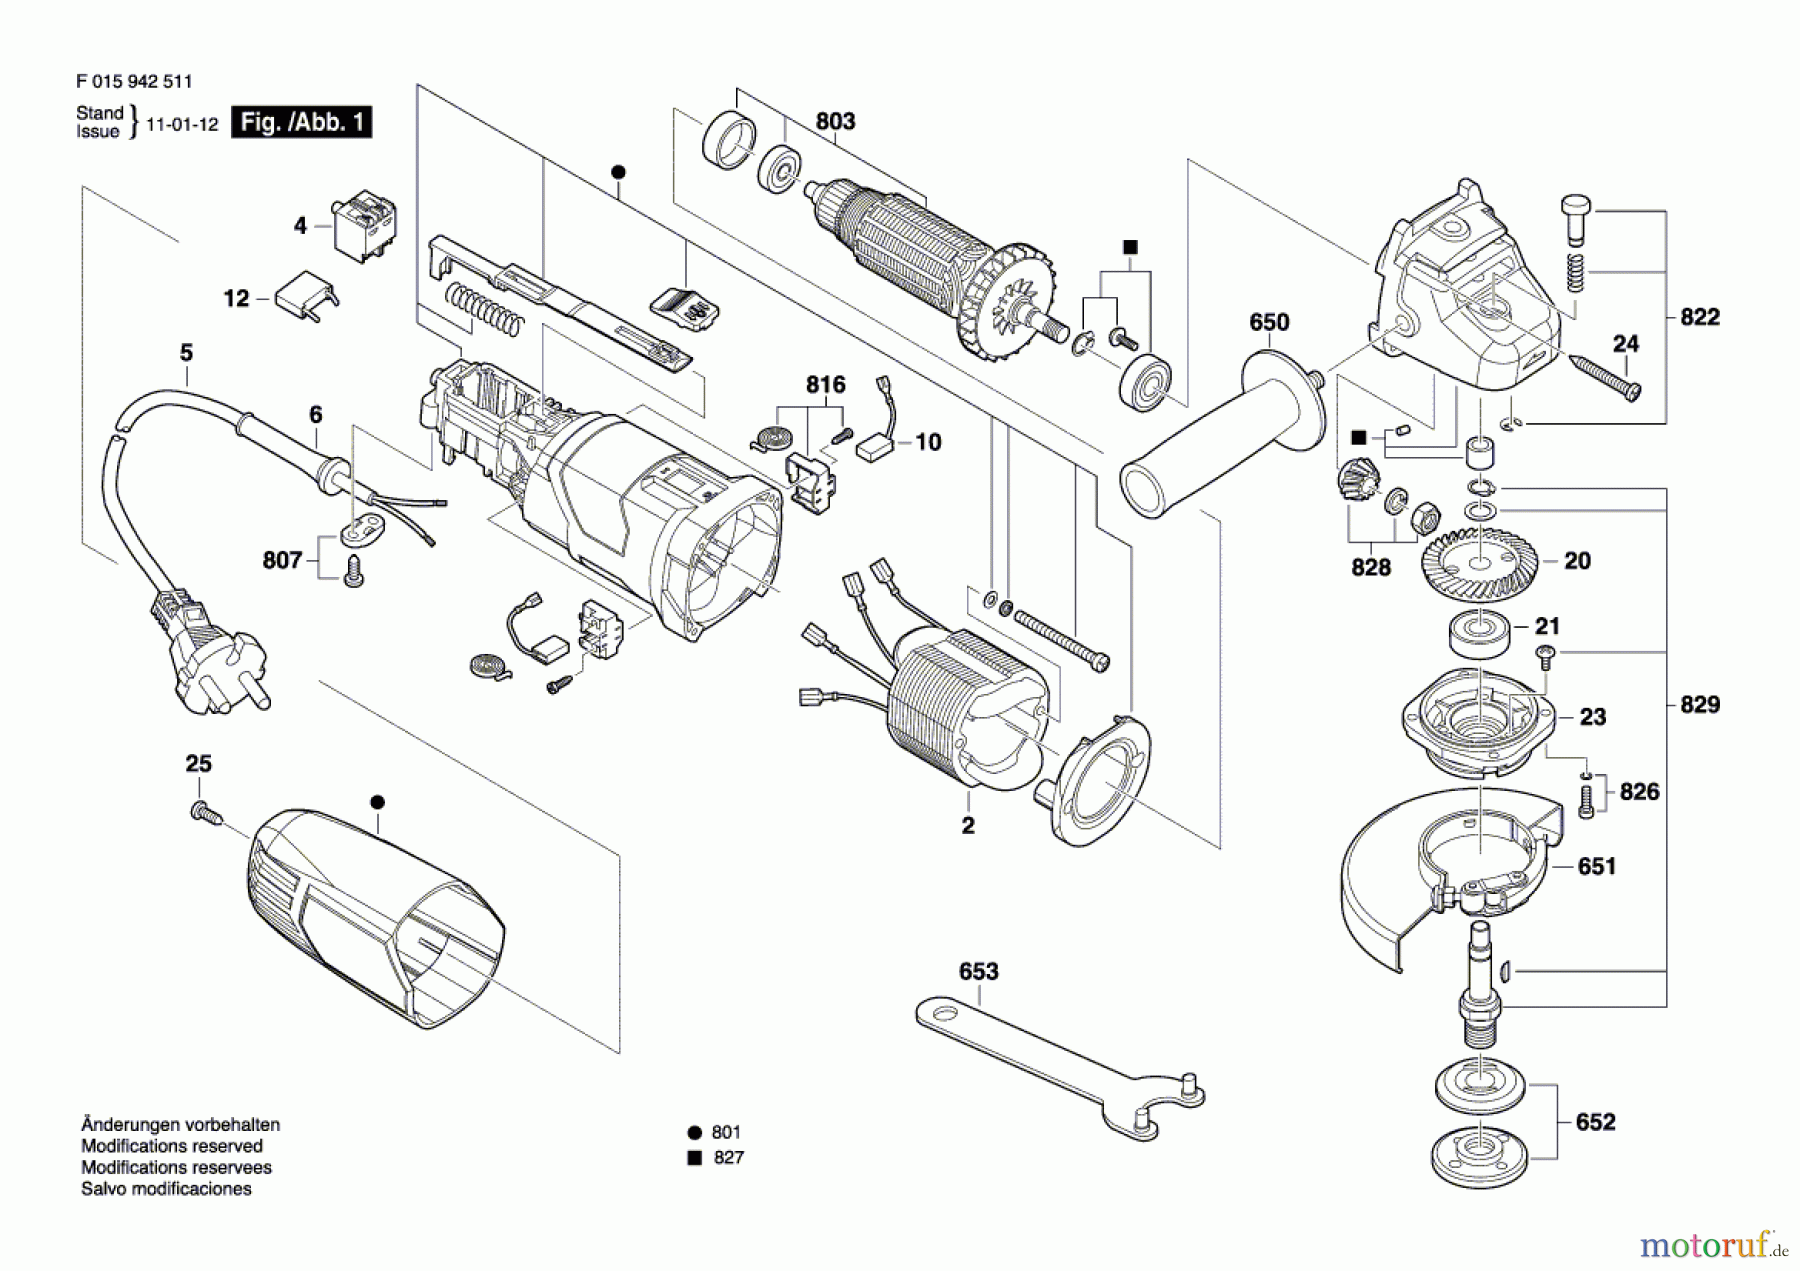  Bosch Werkzeug Pw-Winkelschleifer --- Seite 1